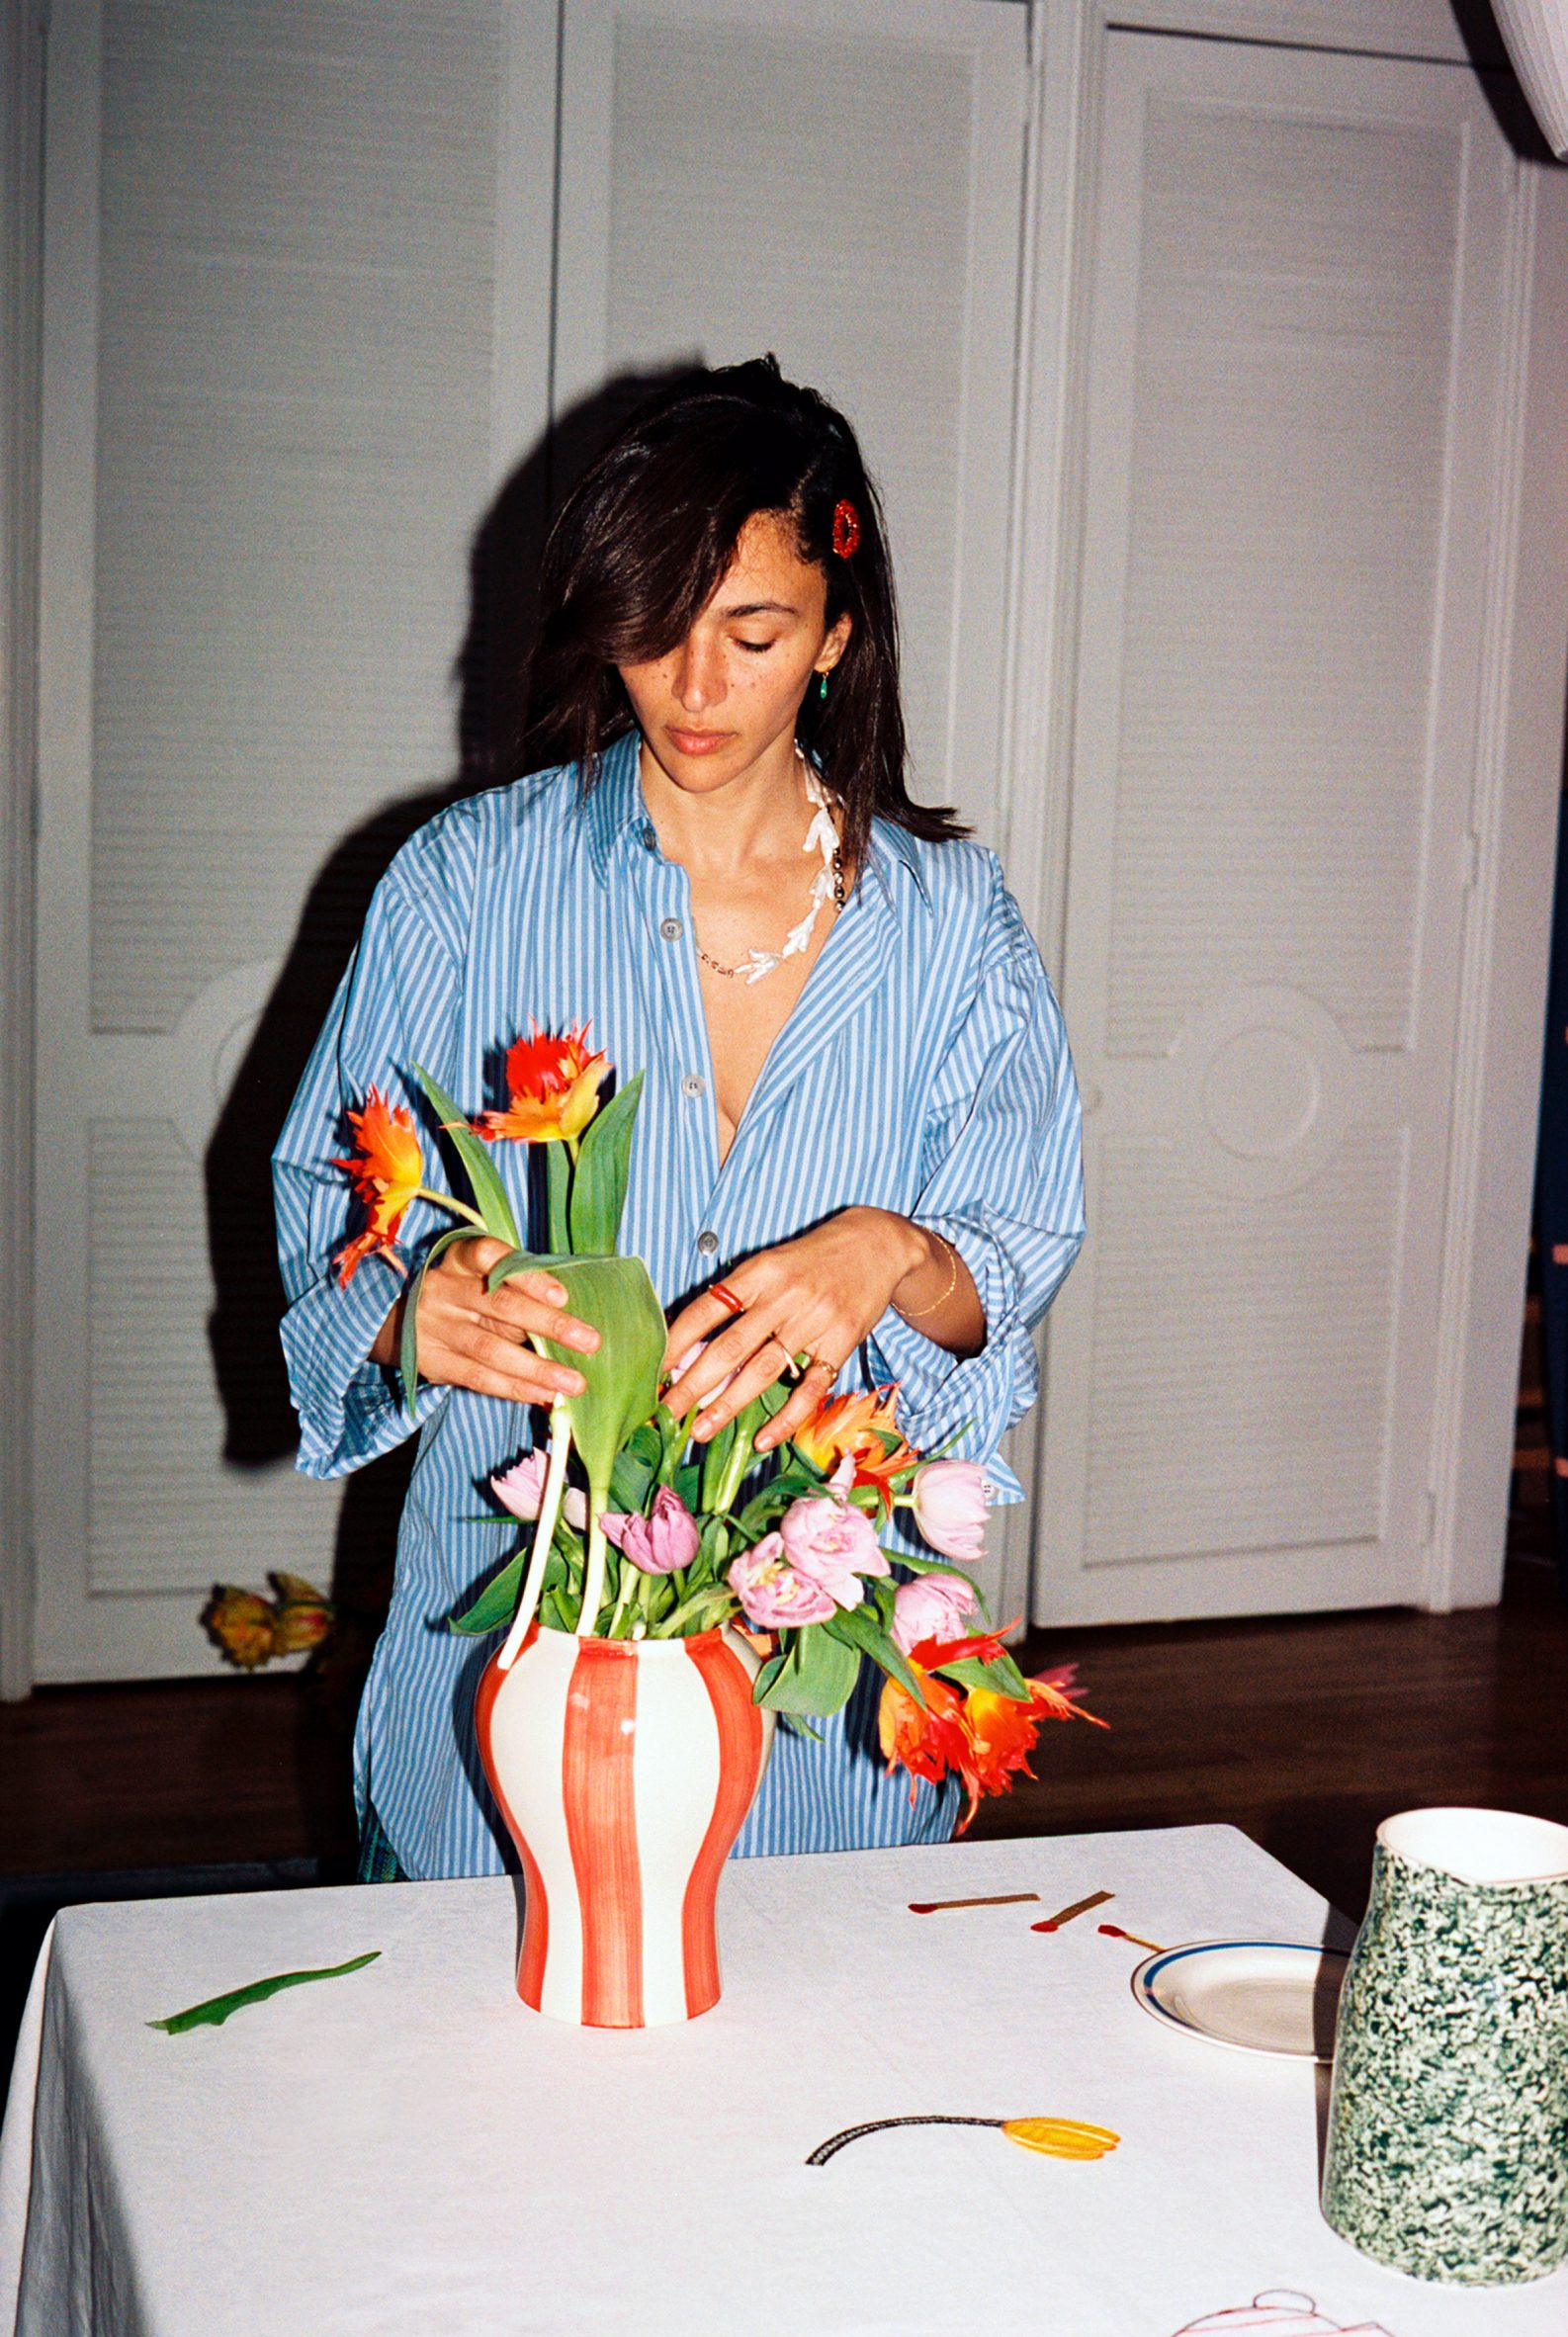 Designer Laila Gohar in a blue-striped shirt arranging flowers